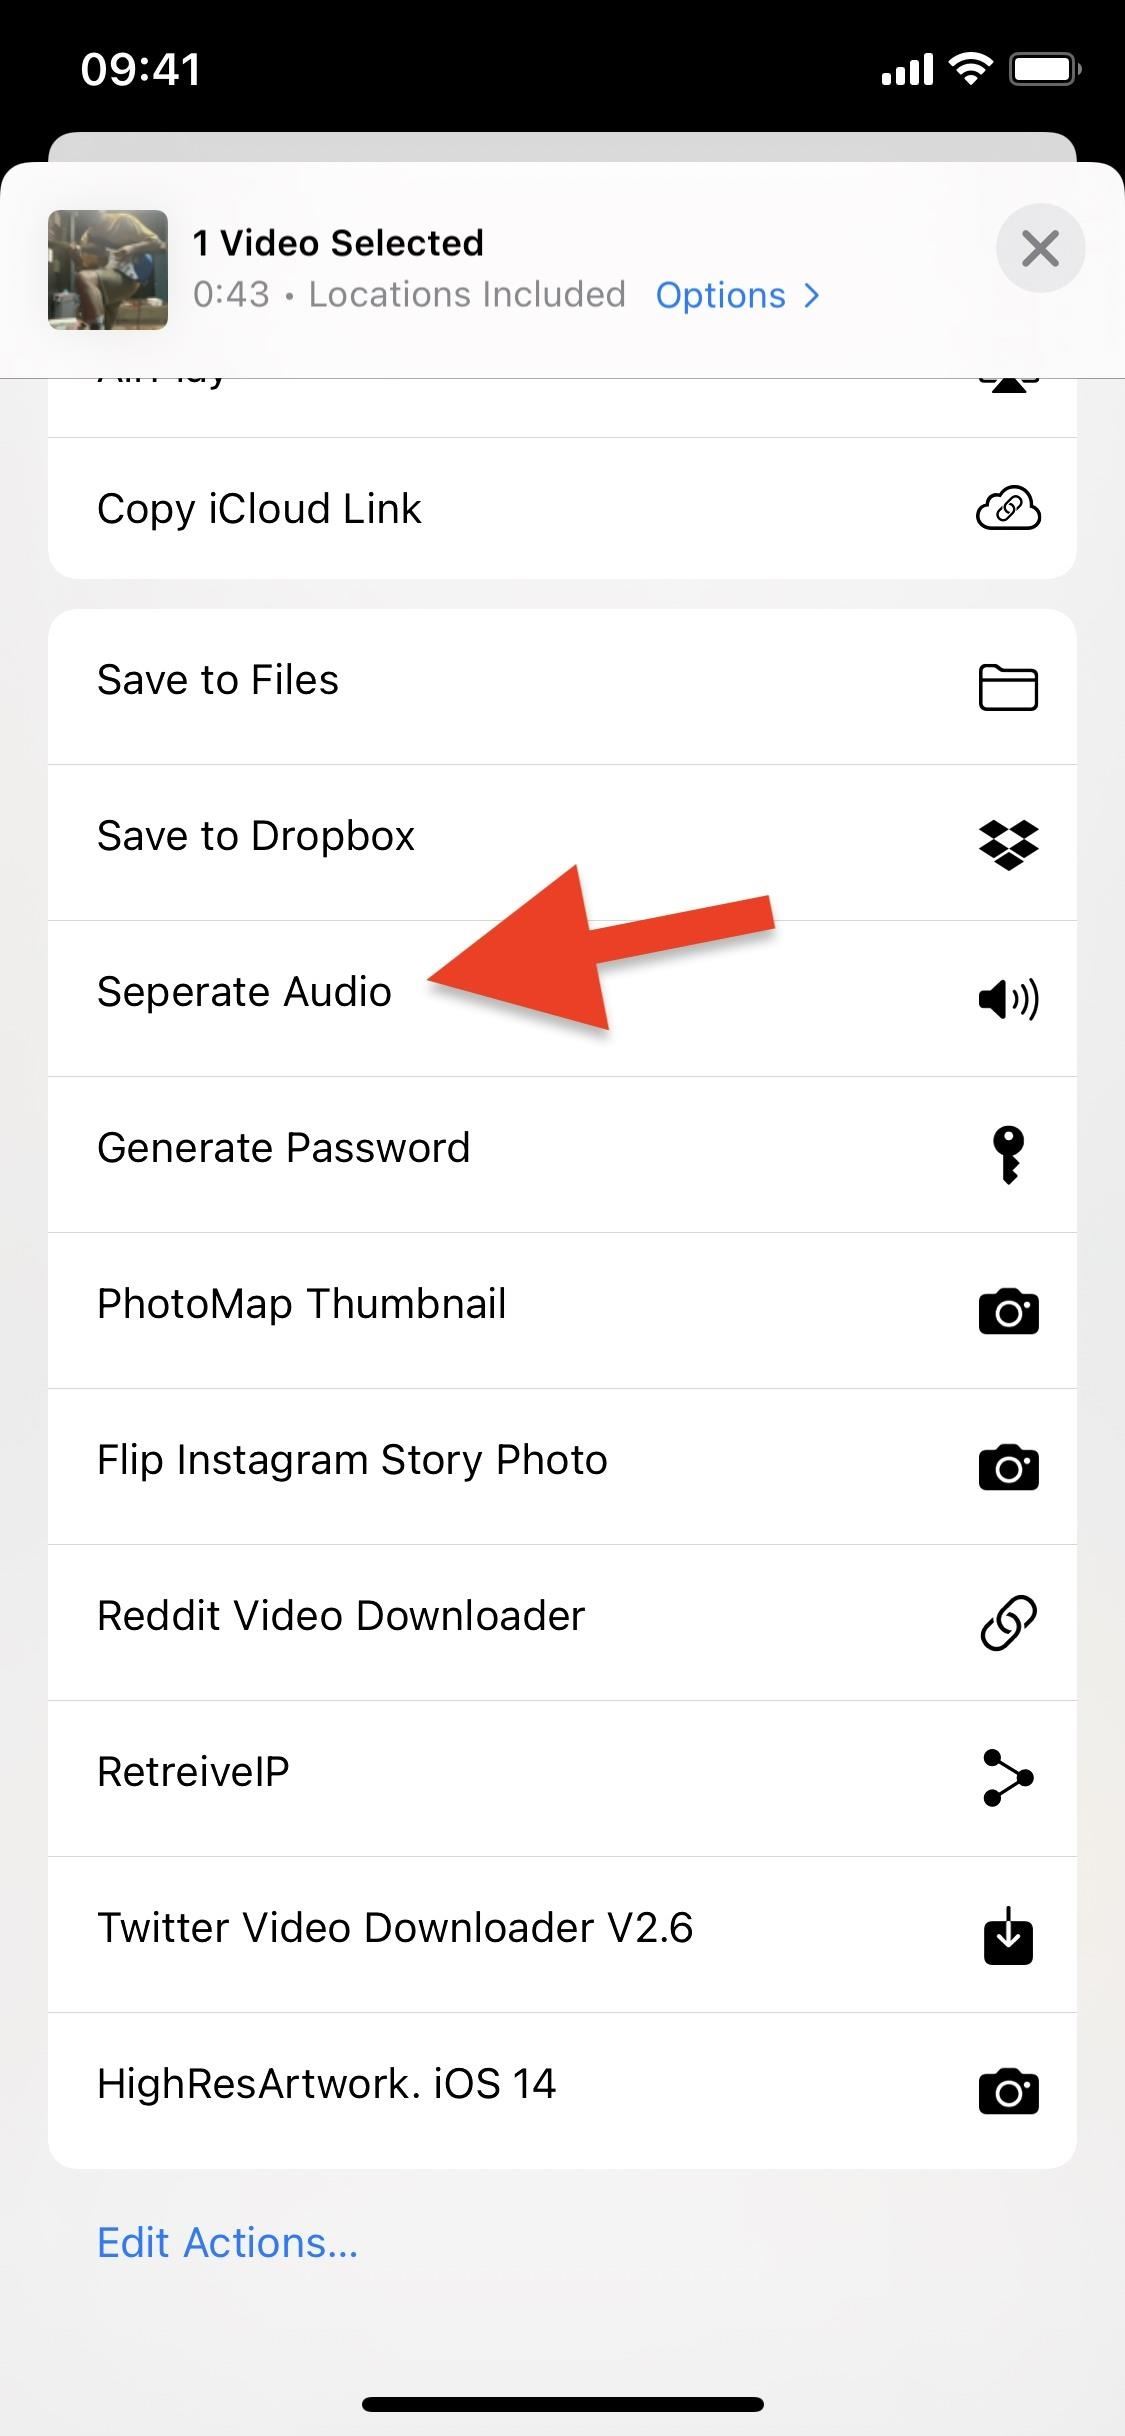 Extrahieren Sie schnell Audiospuren aus jedem Video auf Ihrem iPhone – direkt aus der Zwischenablage.